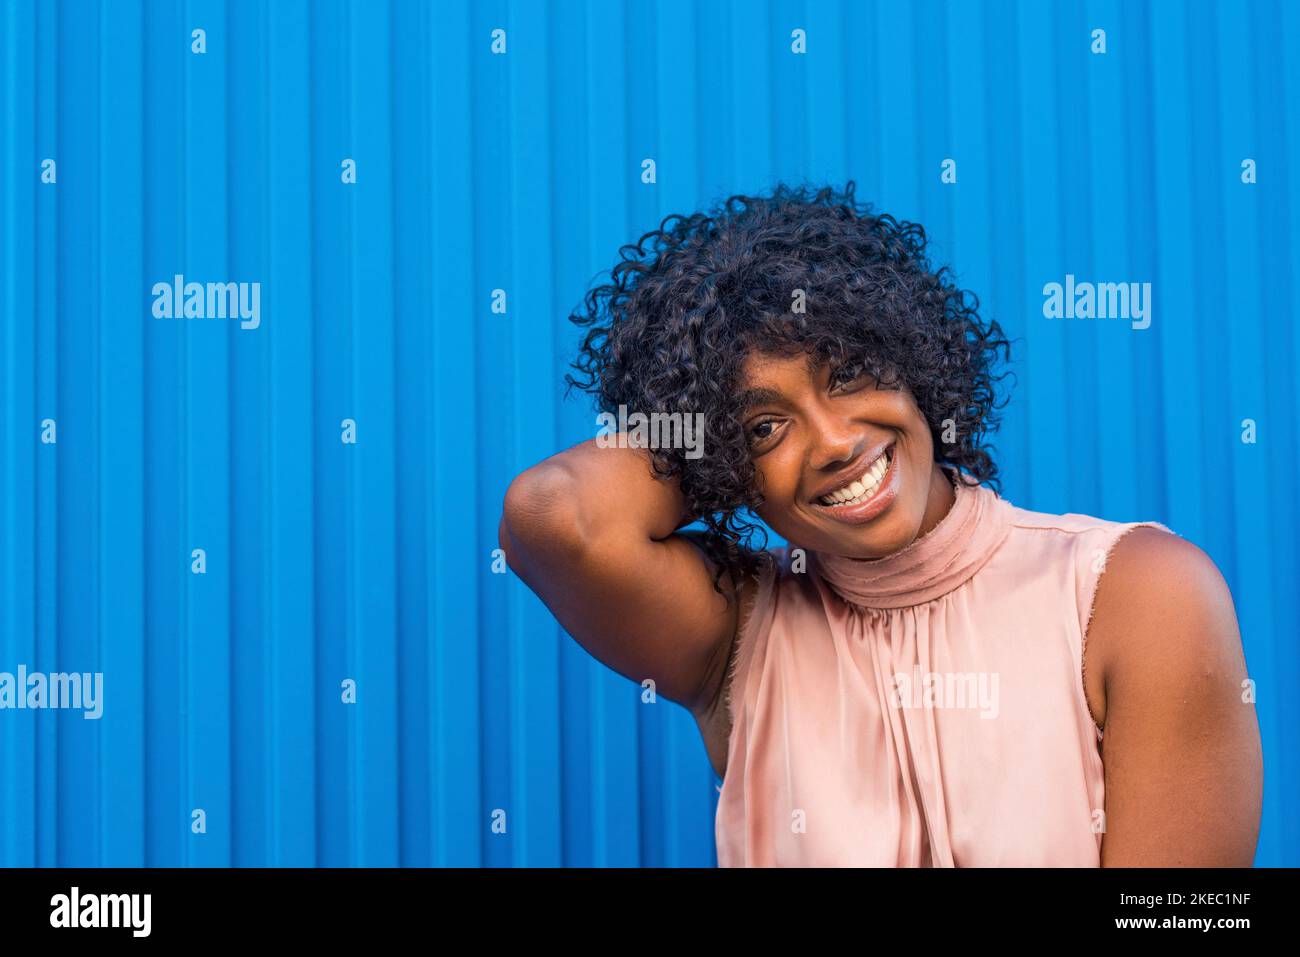 Ritratto colorato di giovane donna africana e americana sorridendo e guardando la fotocamera divertirsi con il blu bello colore Foto Stock